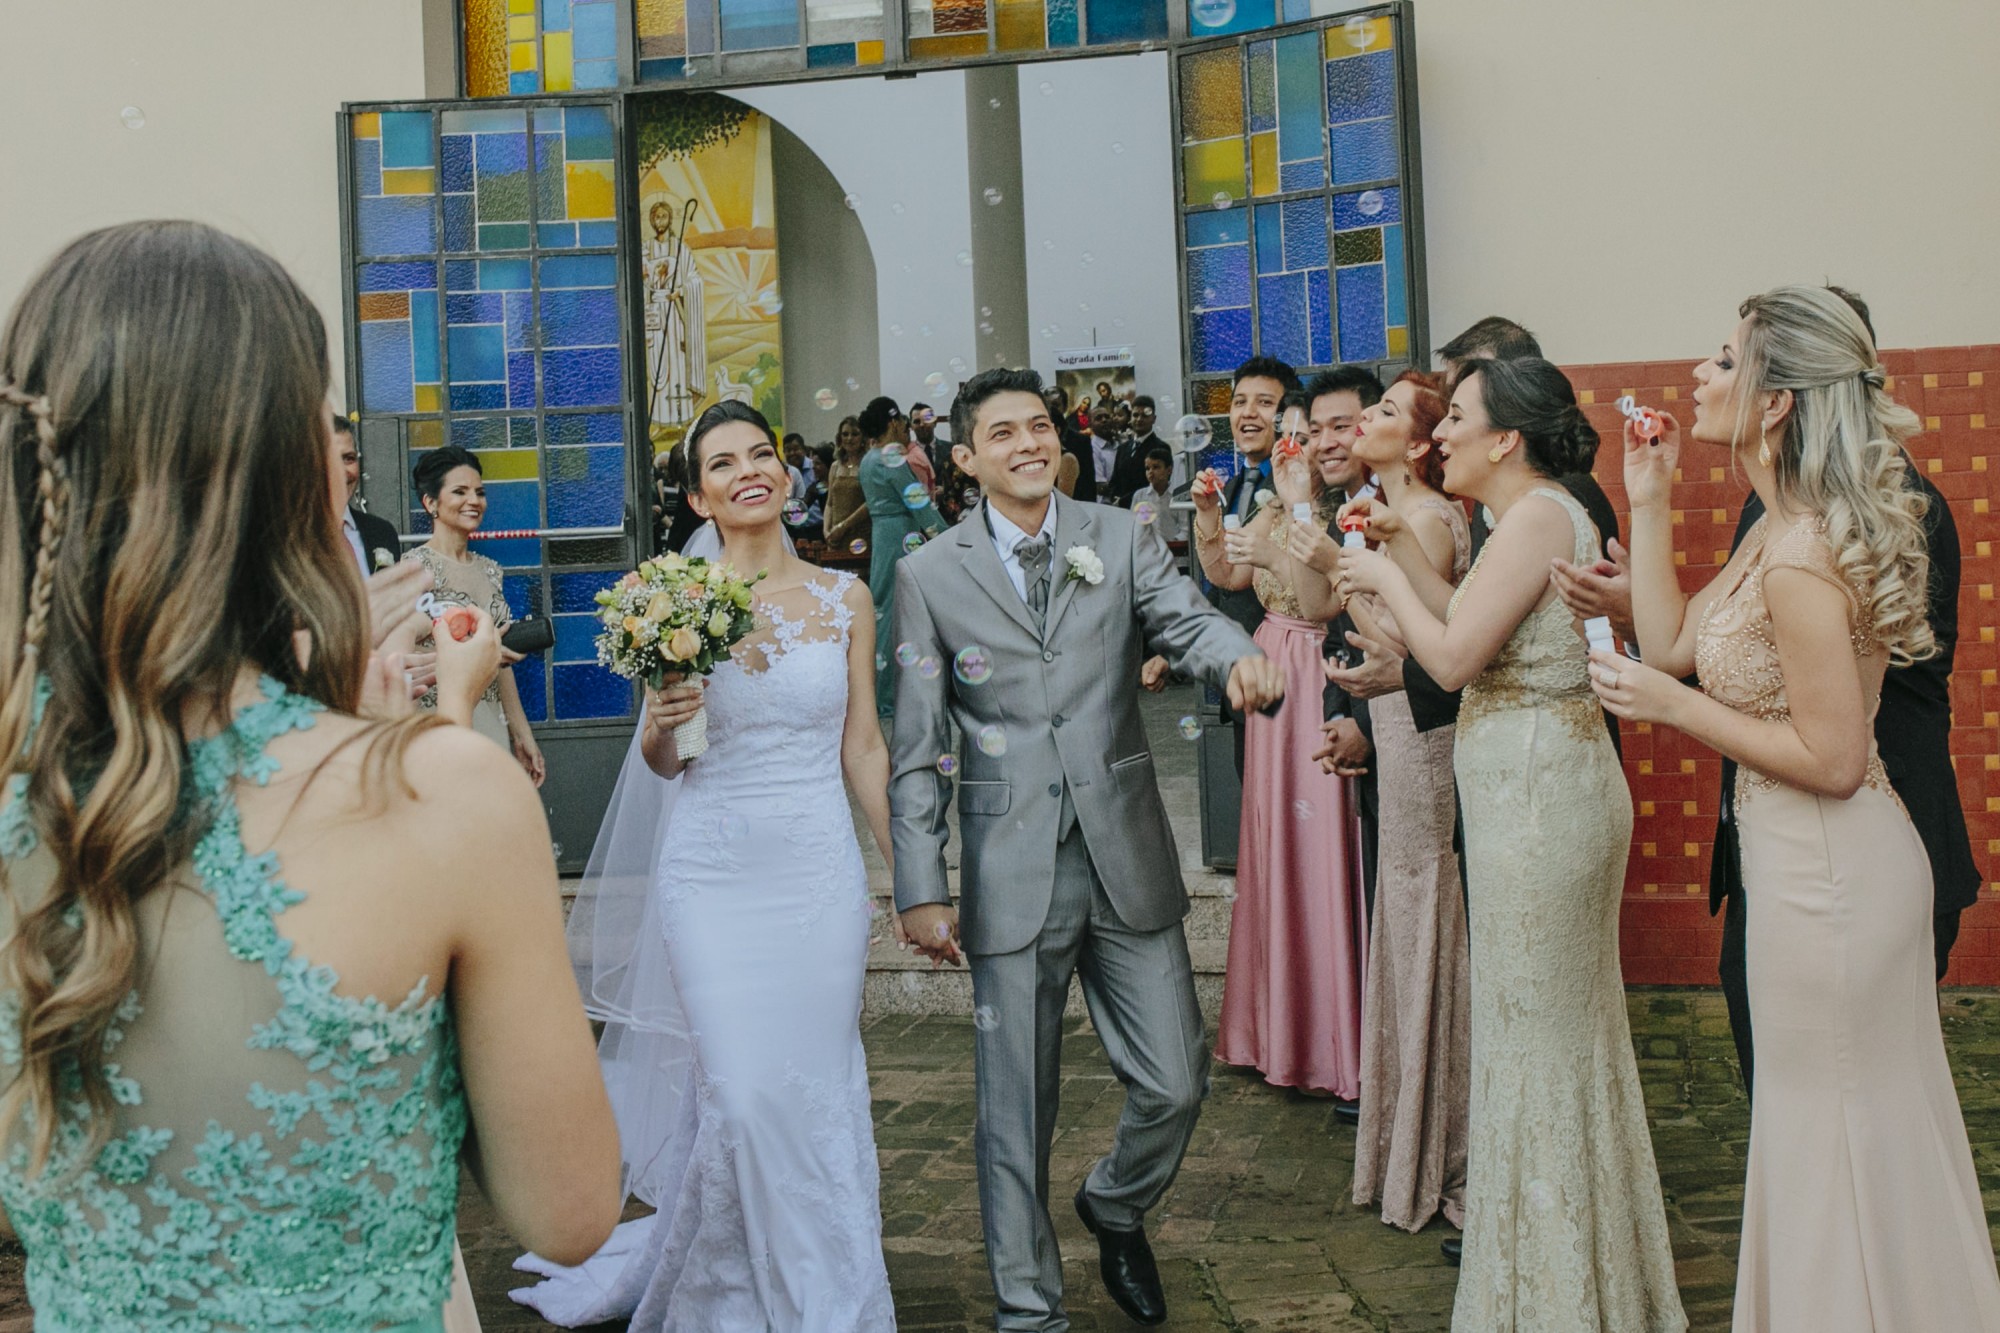 Casamento Camila Rampim e Rafael em Terra Roxa - Paraná - por Lorran Souza e Léia Sotile - fotografos de casamentos - 41